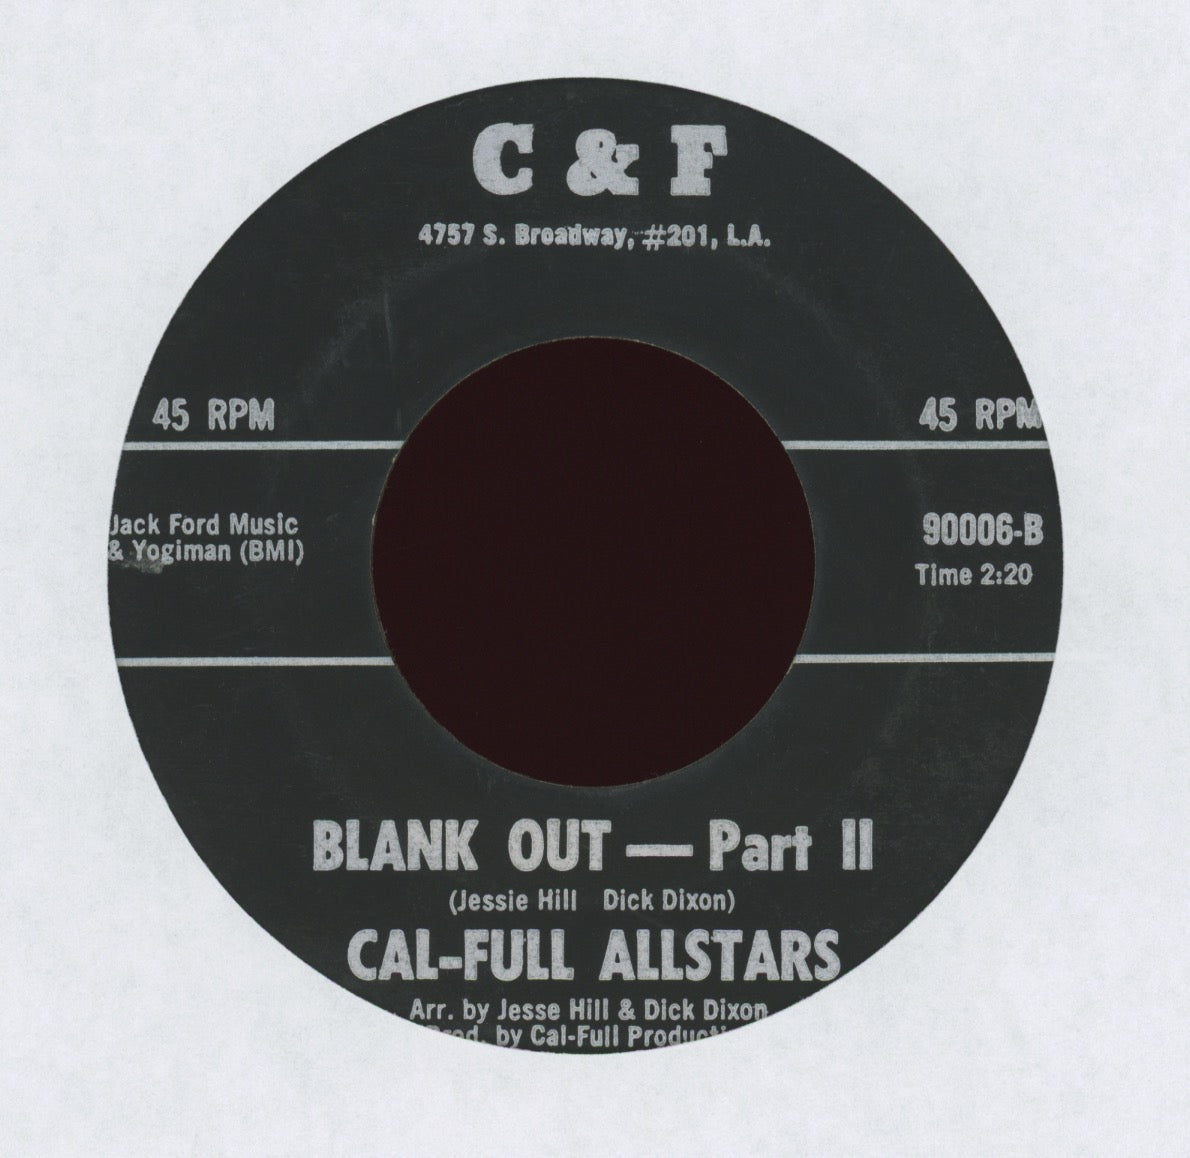 Cal-Full Allstars - Blank Out on C & F